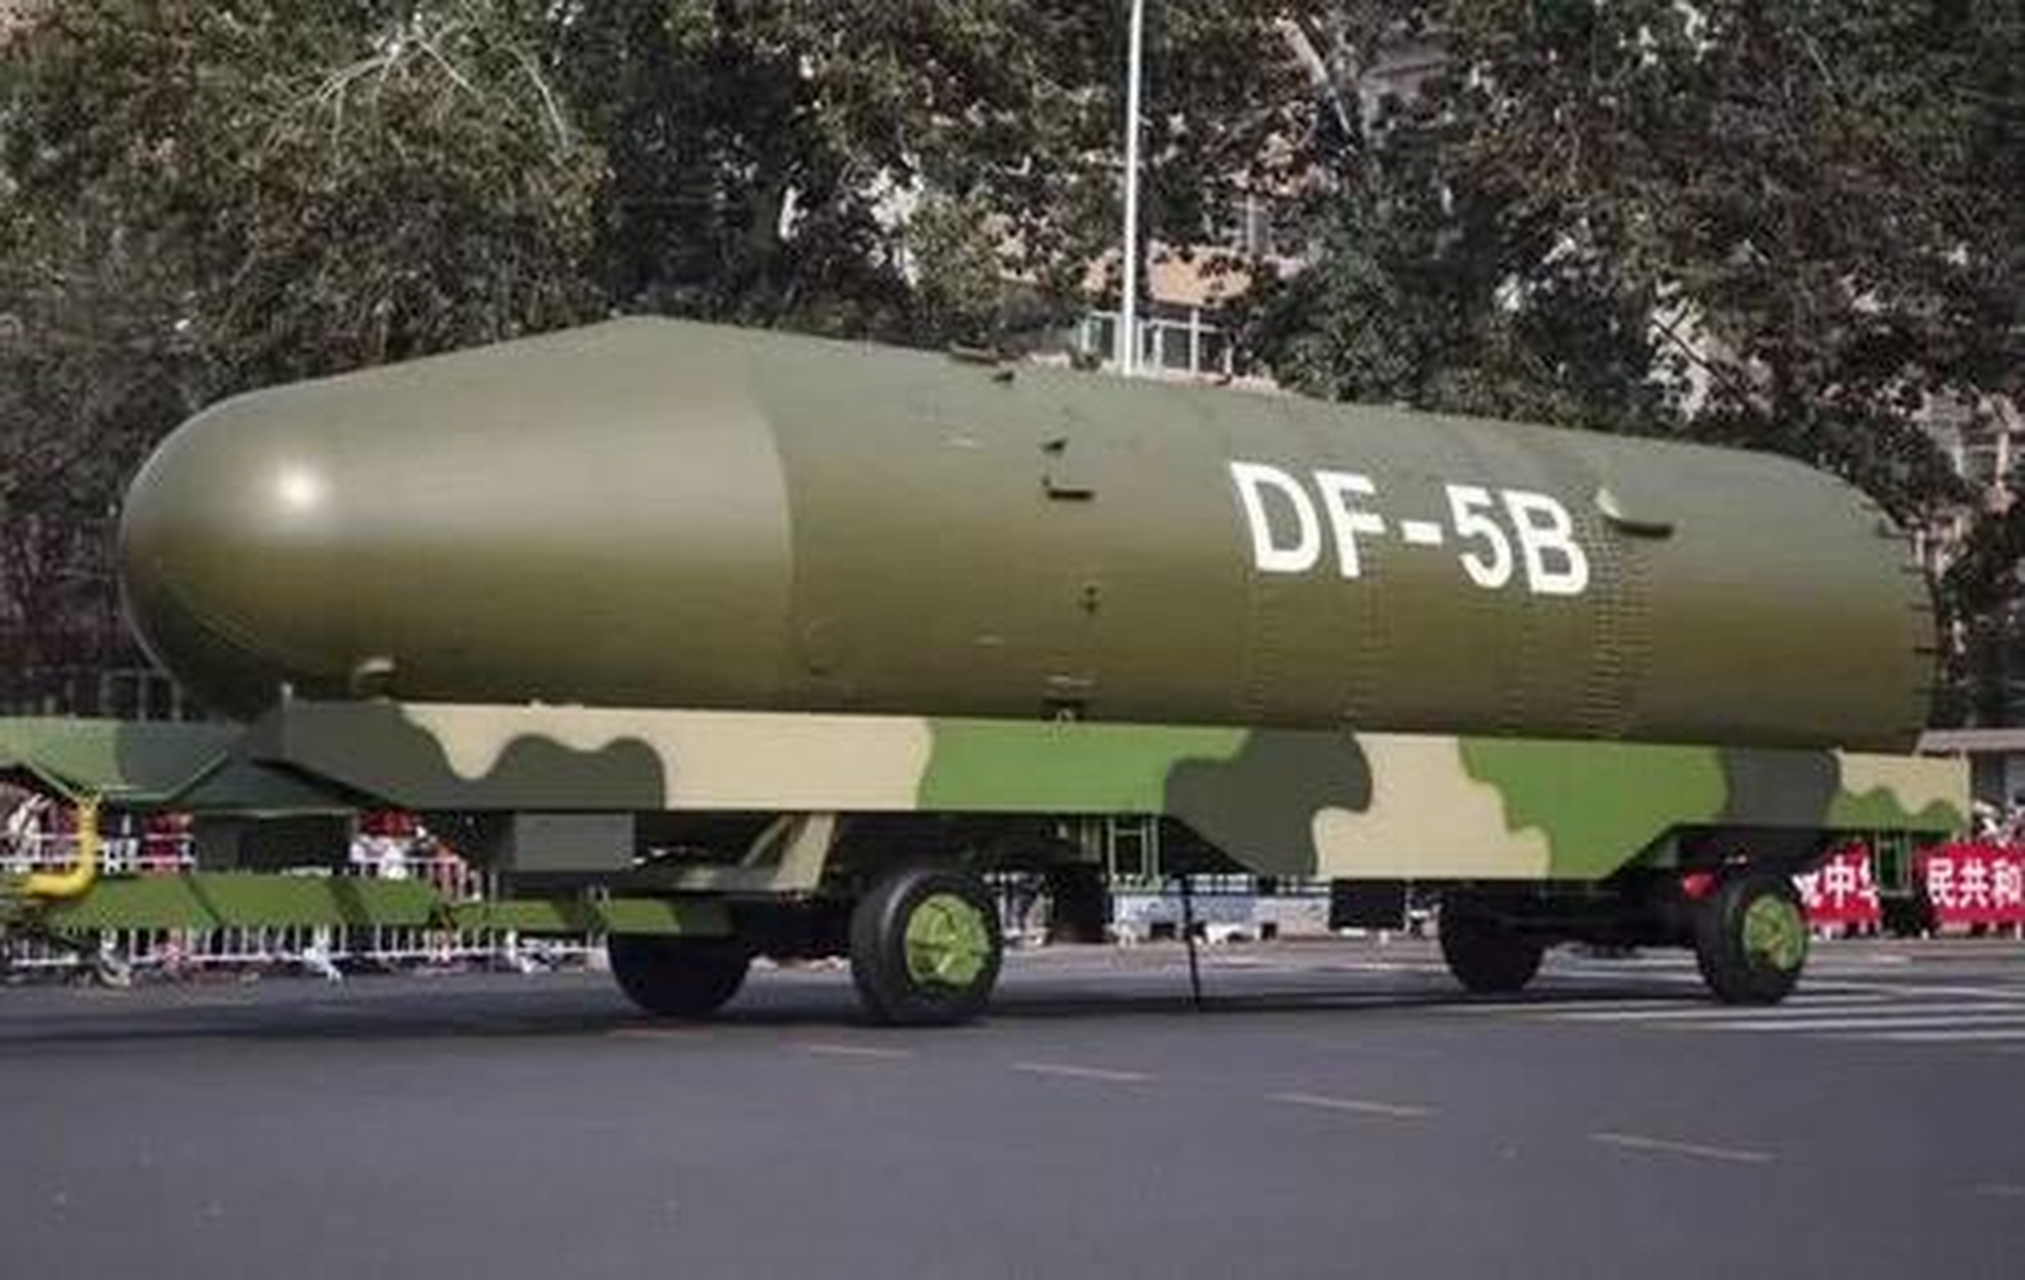 核武器# 东风-5弹道导弹(简称:df-5,北约代号:css-4)是中国人民解放